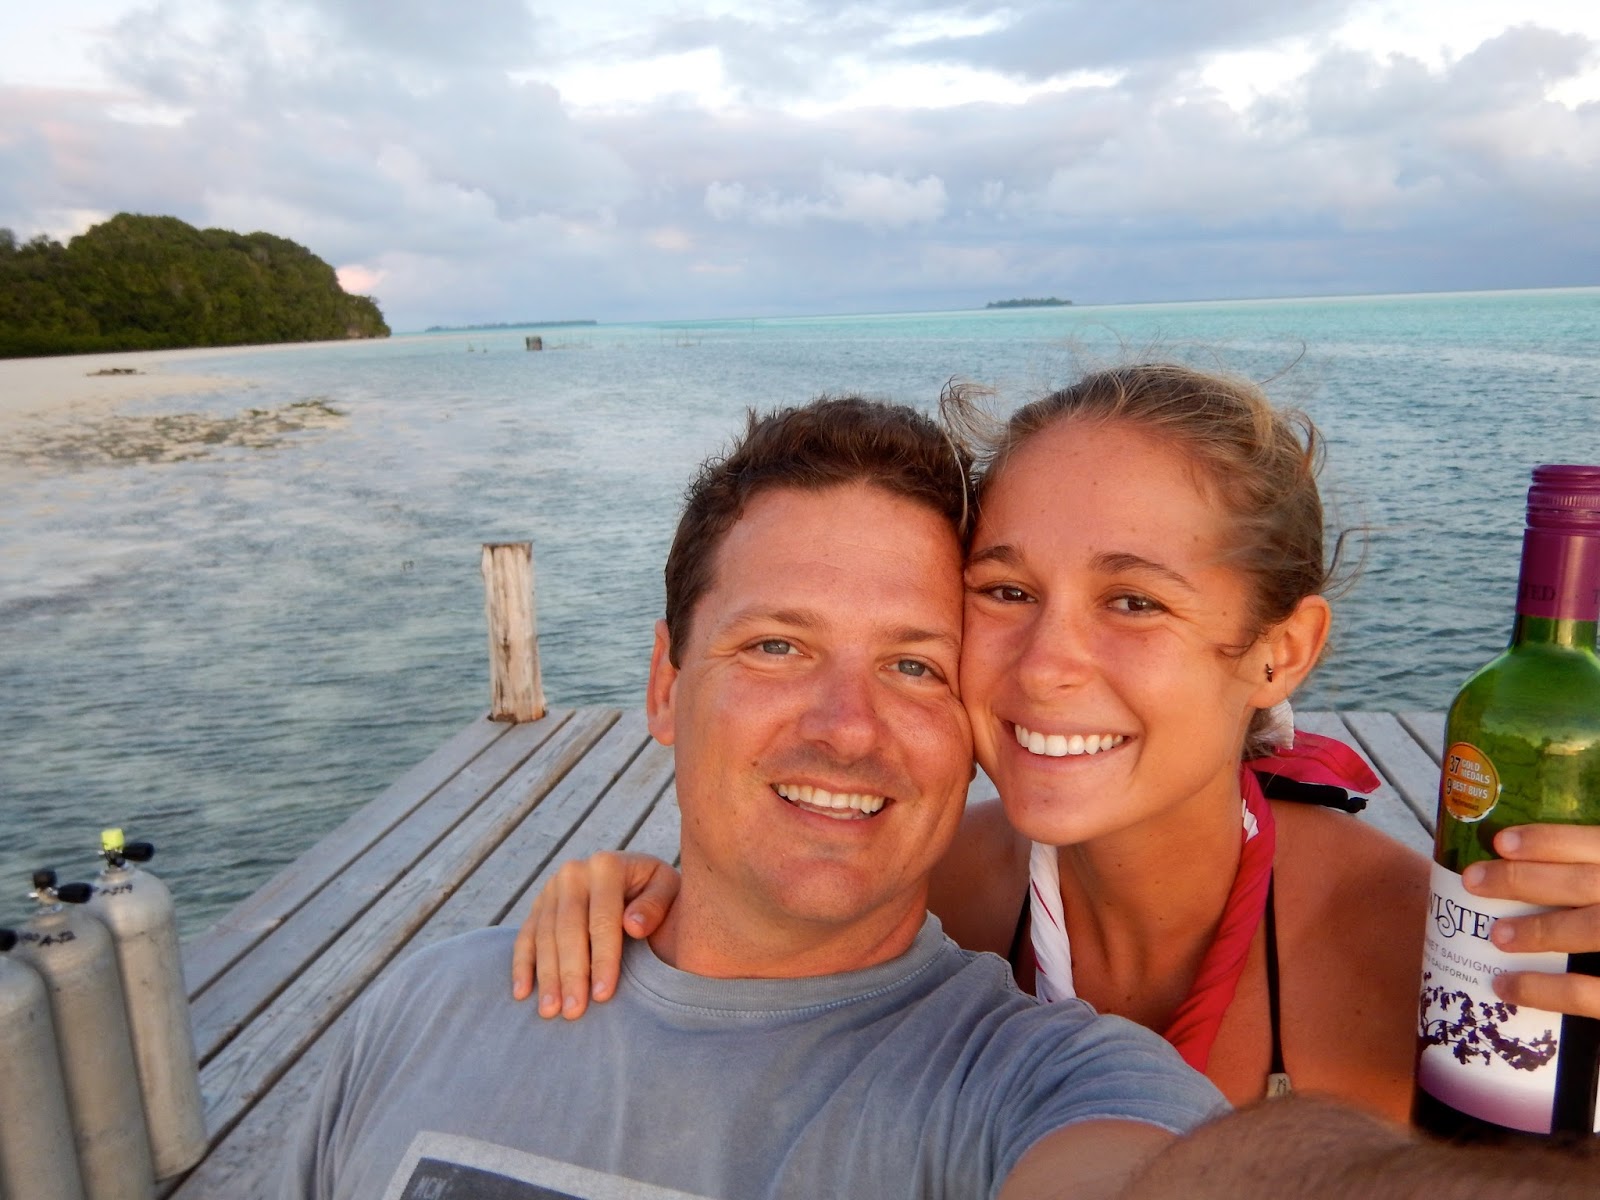 Me and Fletch on Carp Island, Palau